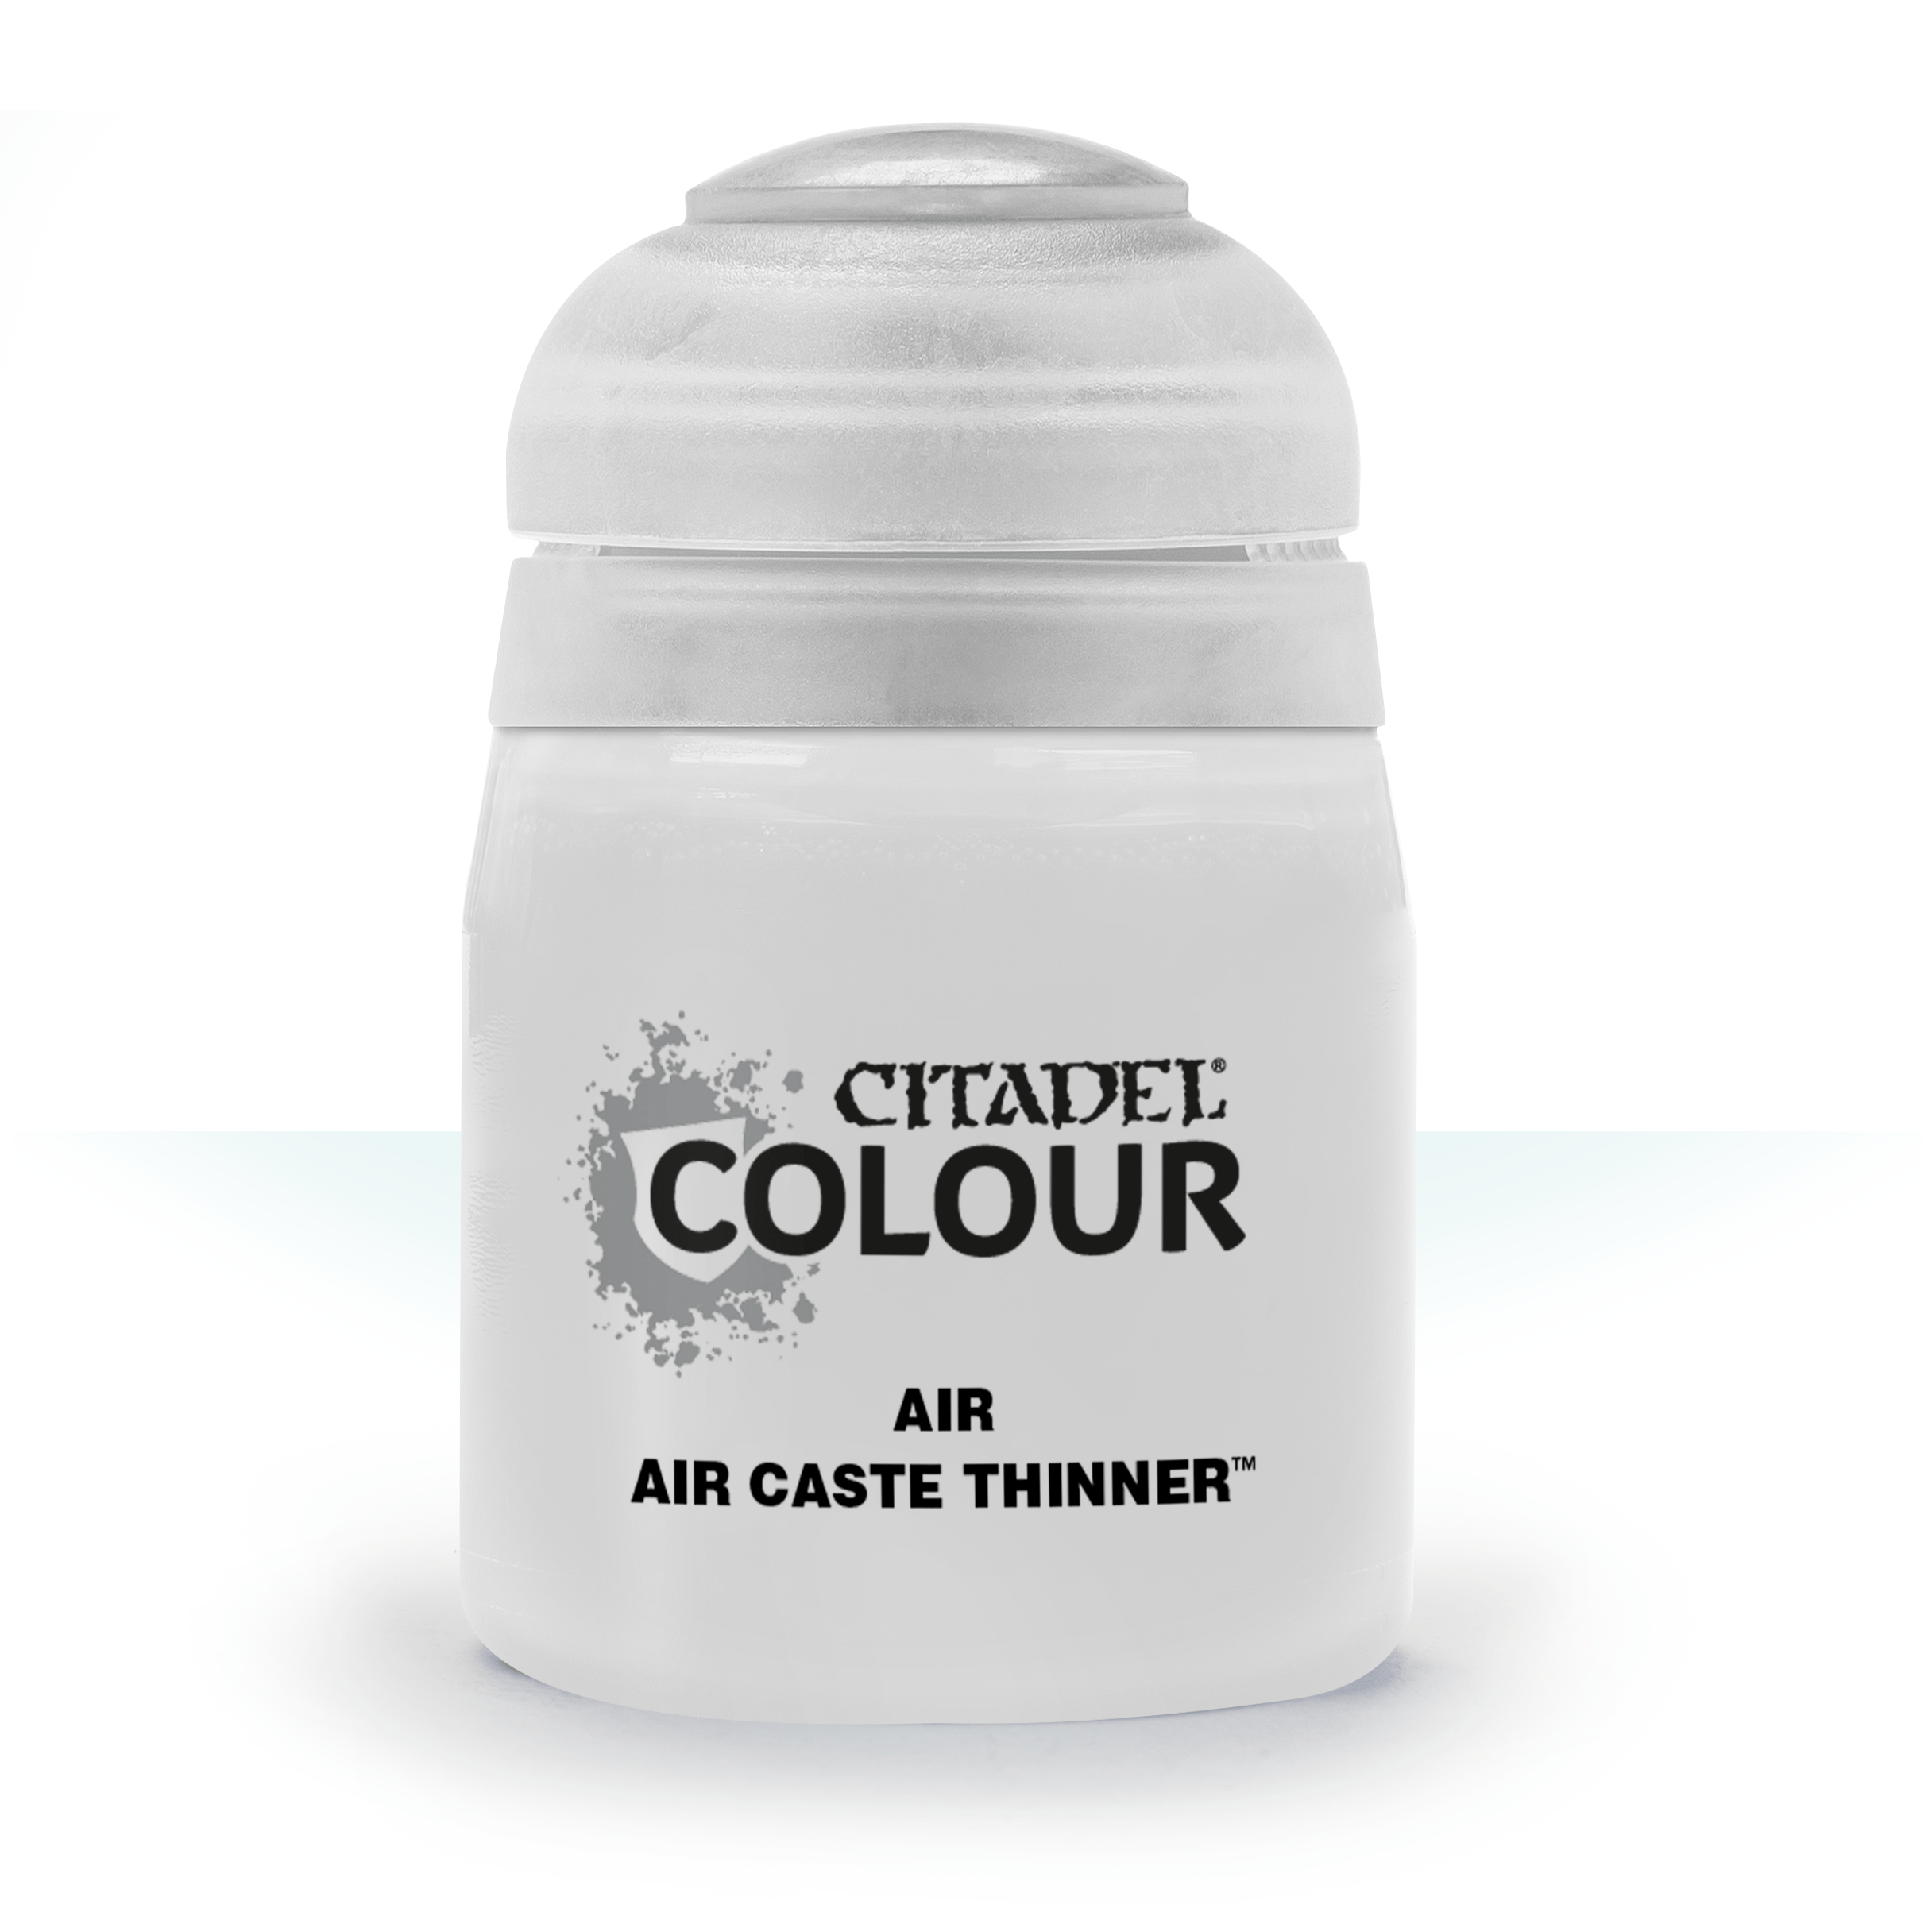 Air Caste Thinner - Citadel Air Colour